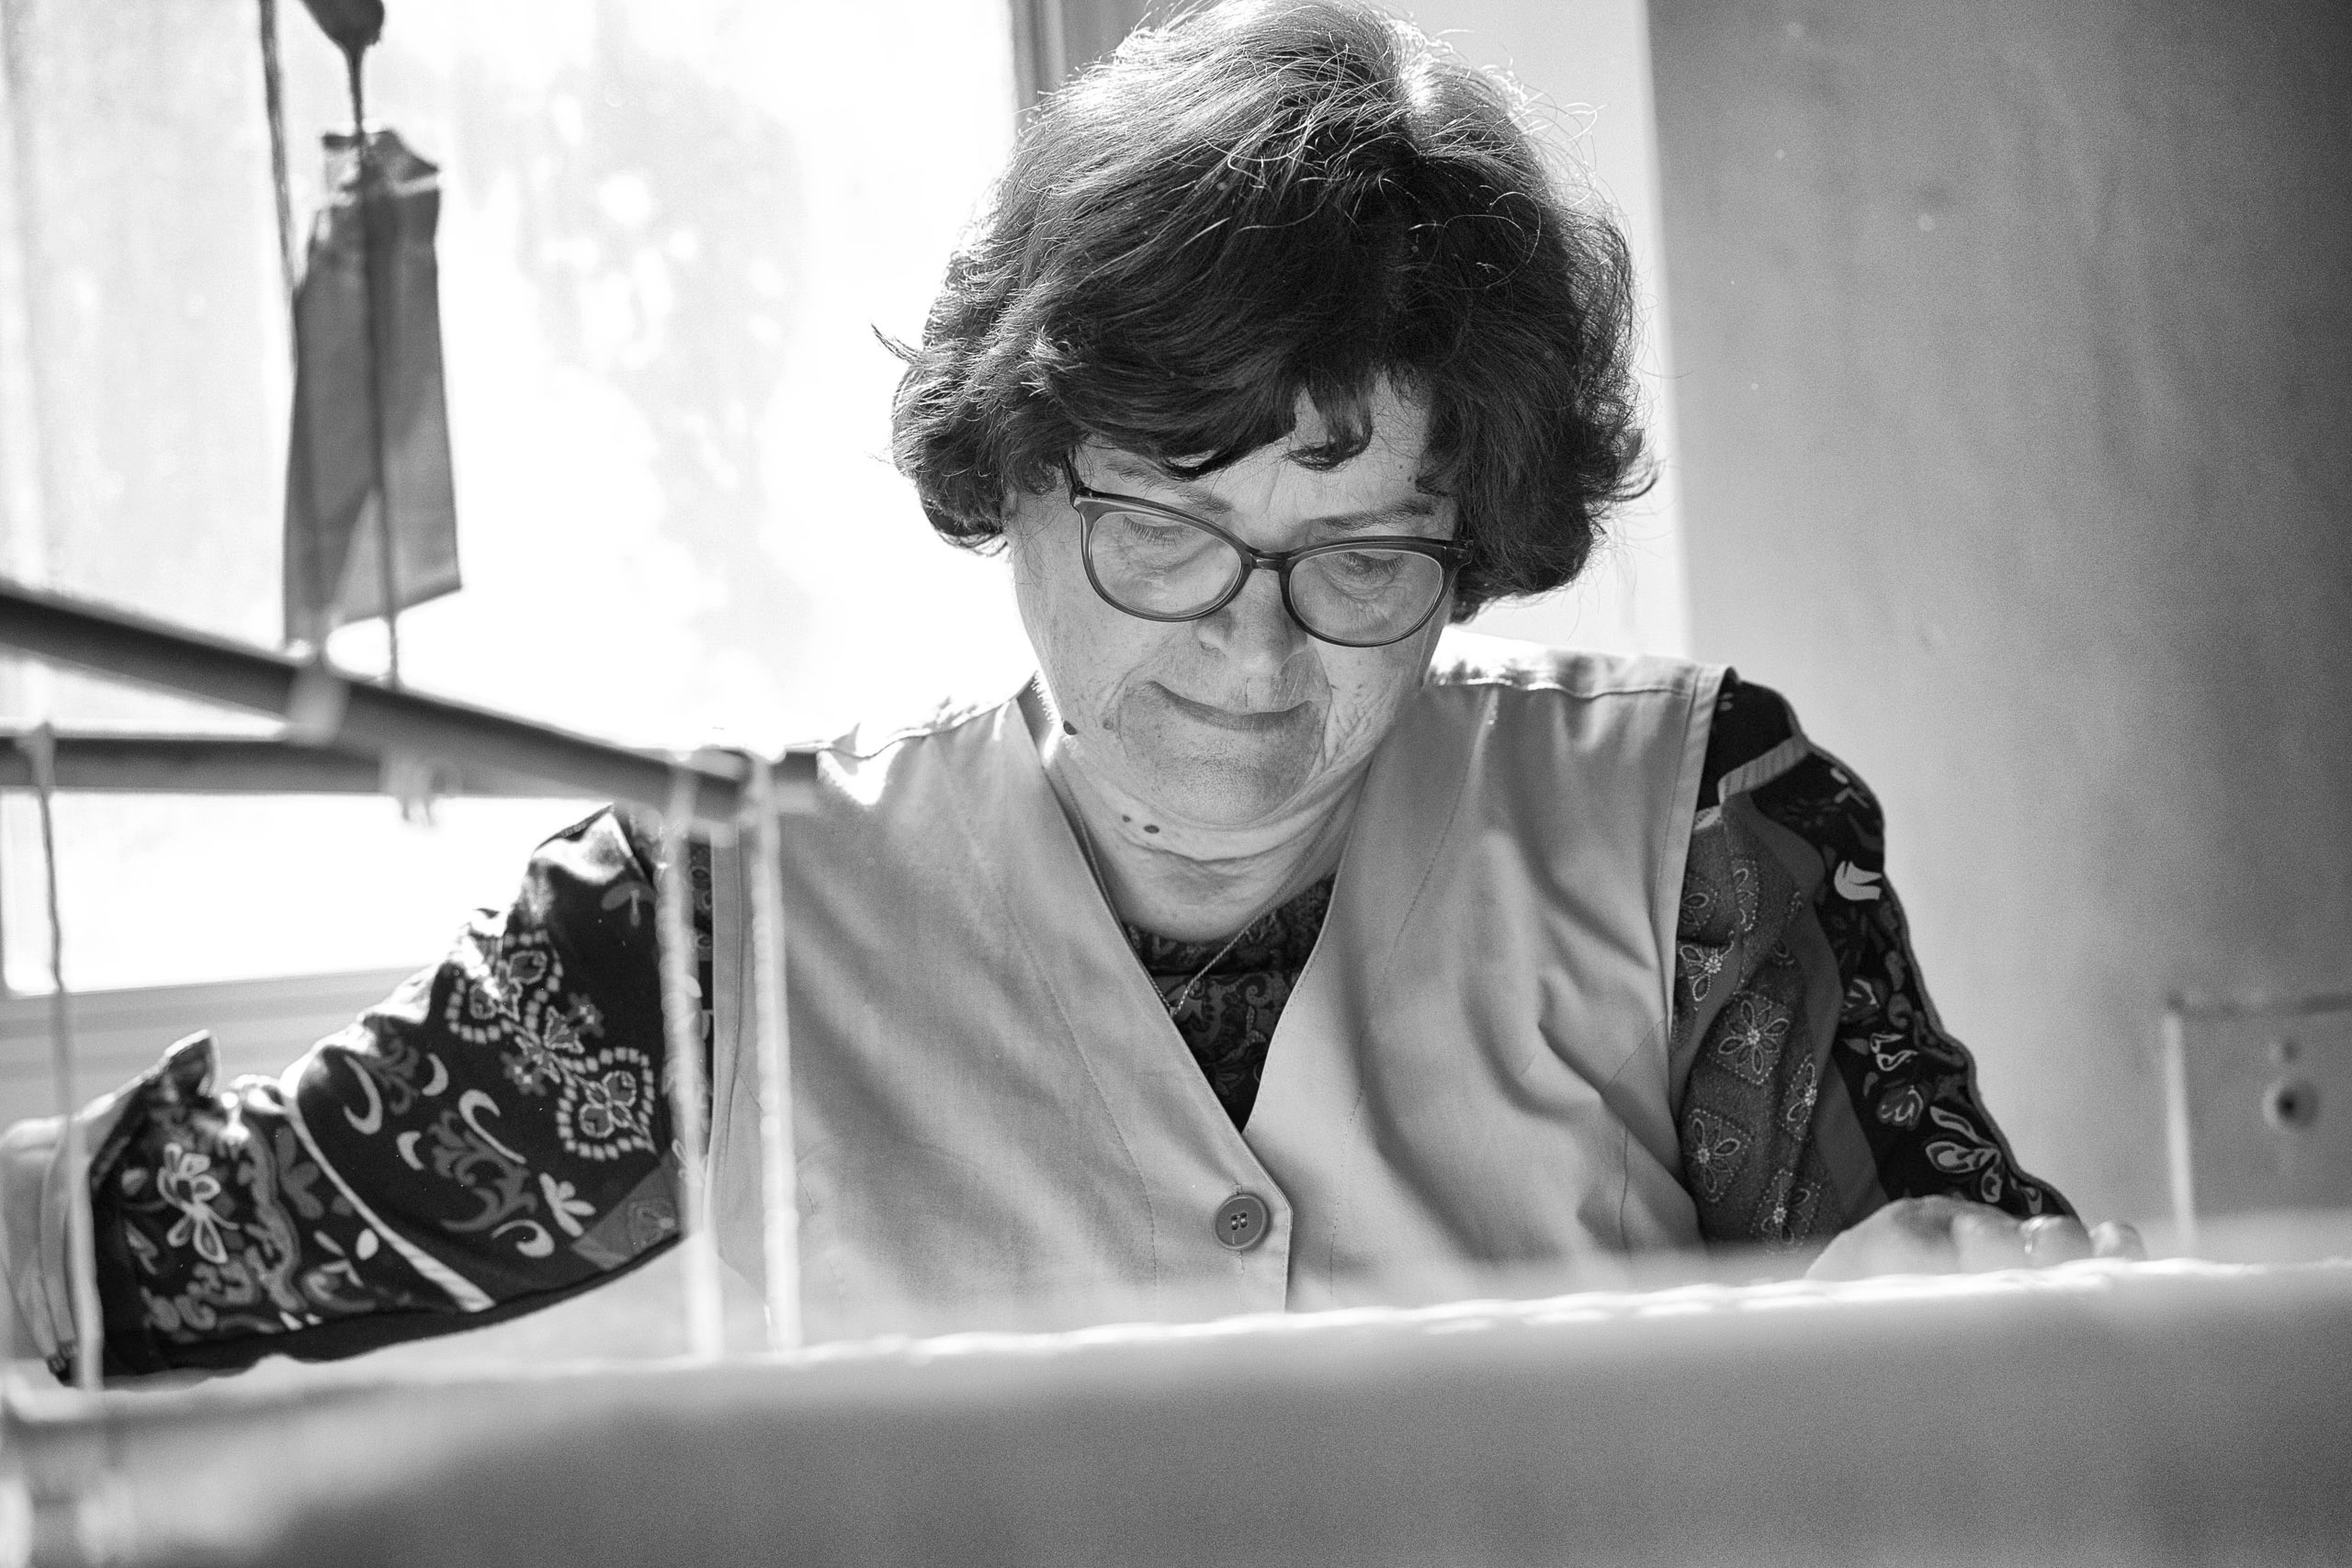 Eine ältere Frau mit Brille konzentriert sich intensiv auf ihre Arbeit an einem Schreibtisch, der vom Tageslicht eines nahegelegenen Fensters beleuchtet wird. Sie trägt eine gemusterte Bluse und eine Weste. © Fotografie Tomas Rodriguez